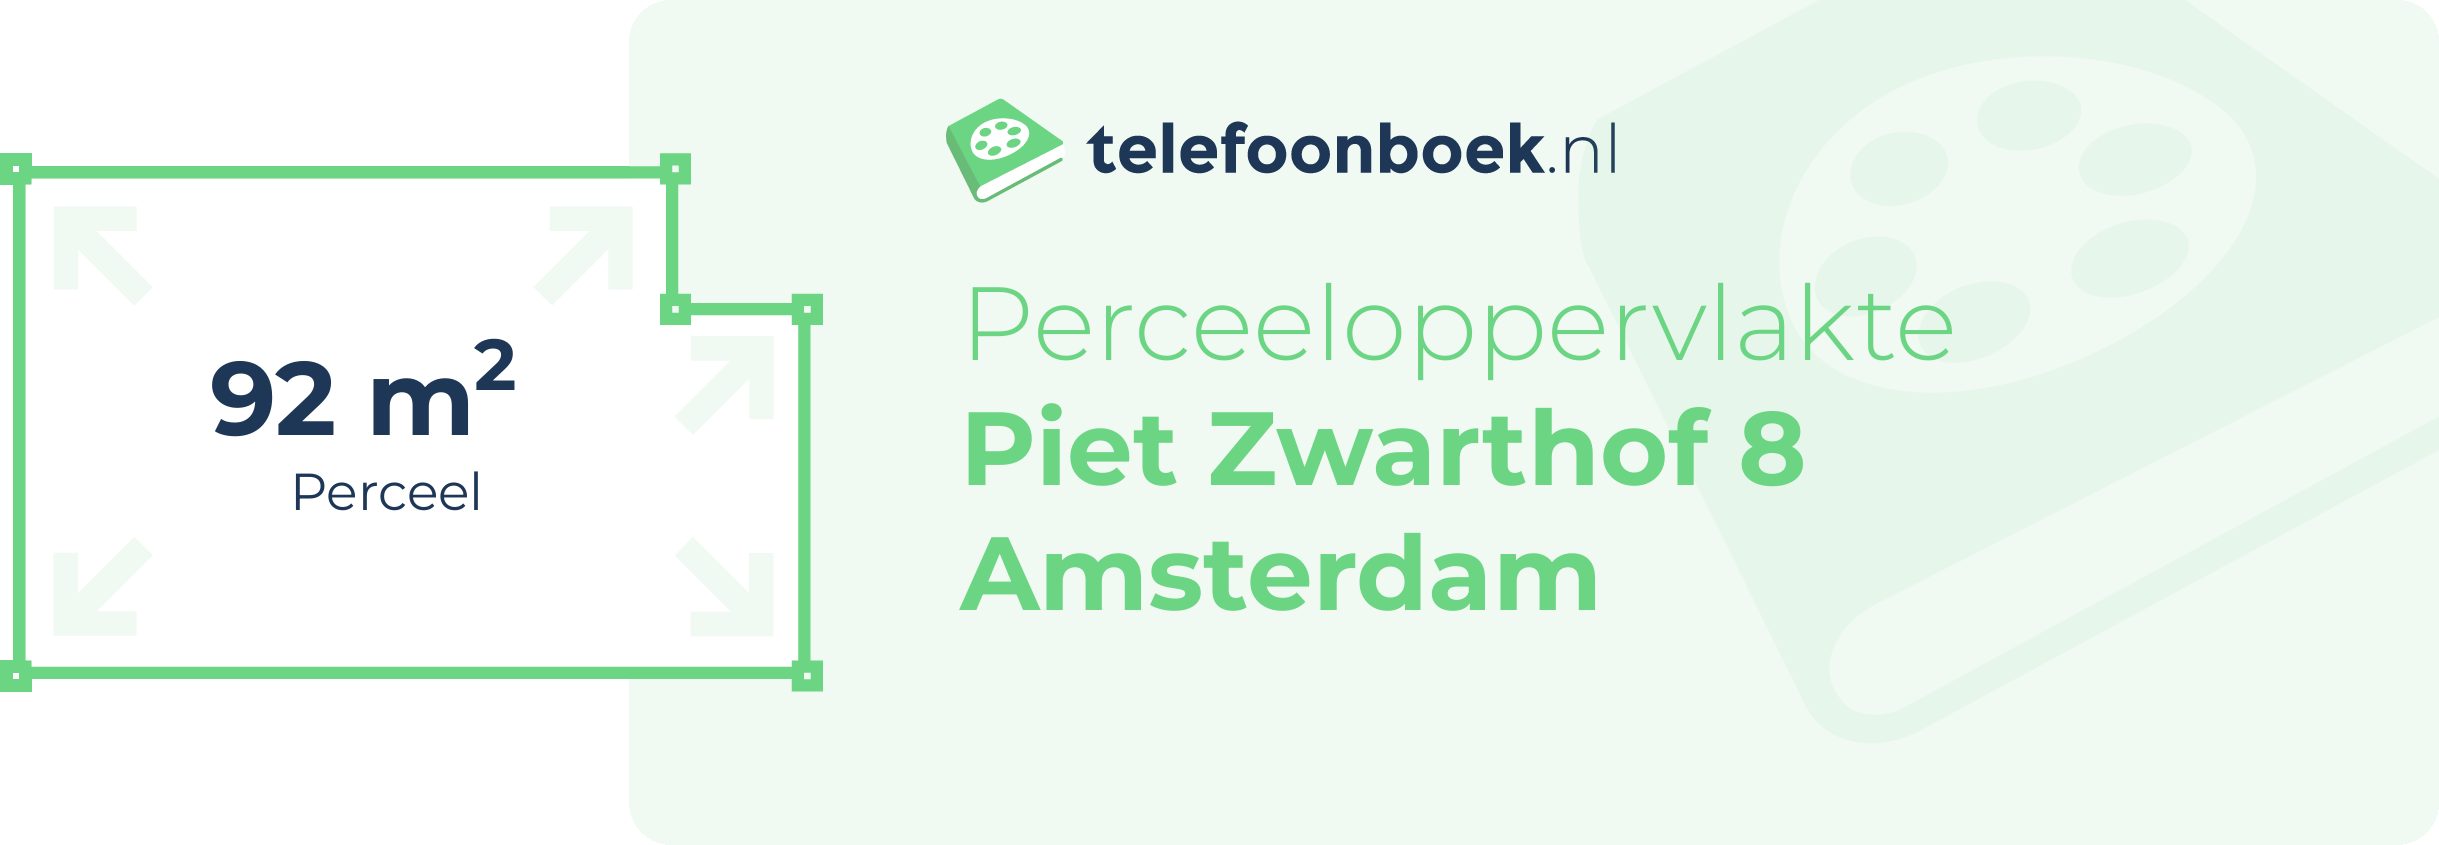 Perceeloppervlakte Piet Zwarthof 8 Amsterdam